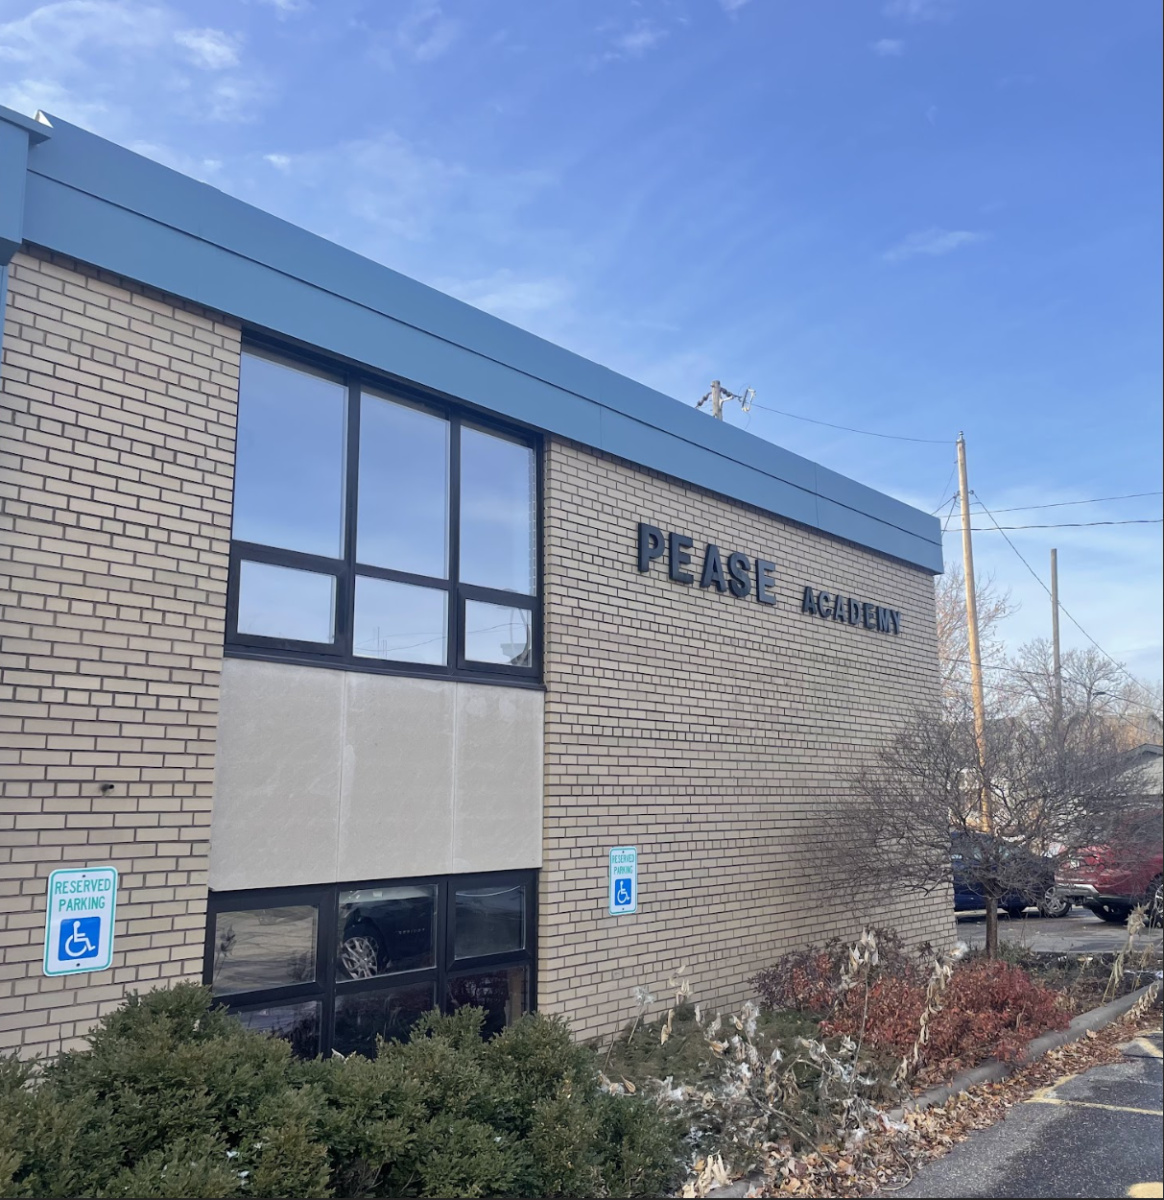 P.E.A.S.E. Academy building on Dec. 6, 2023.